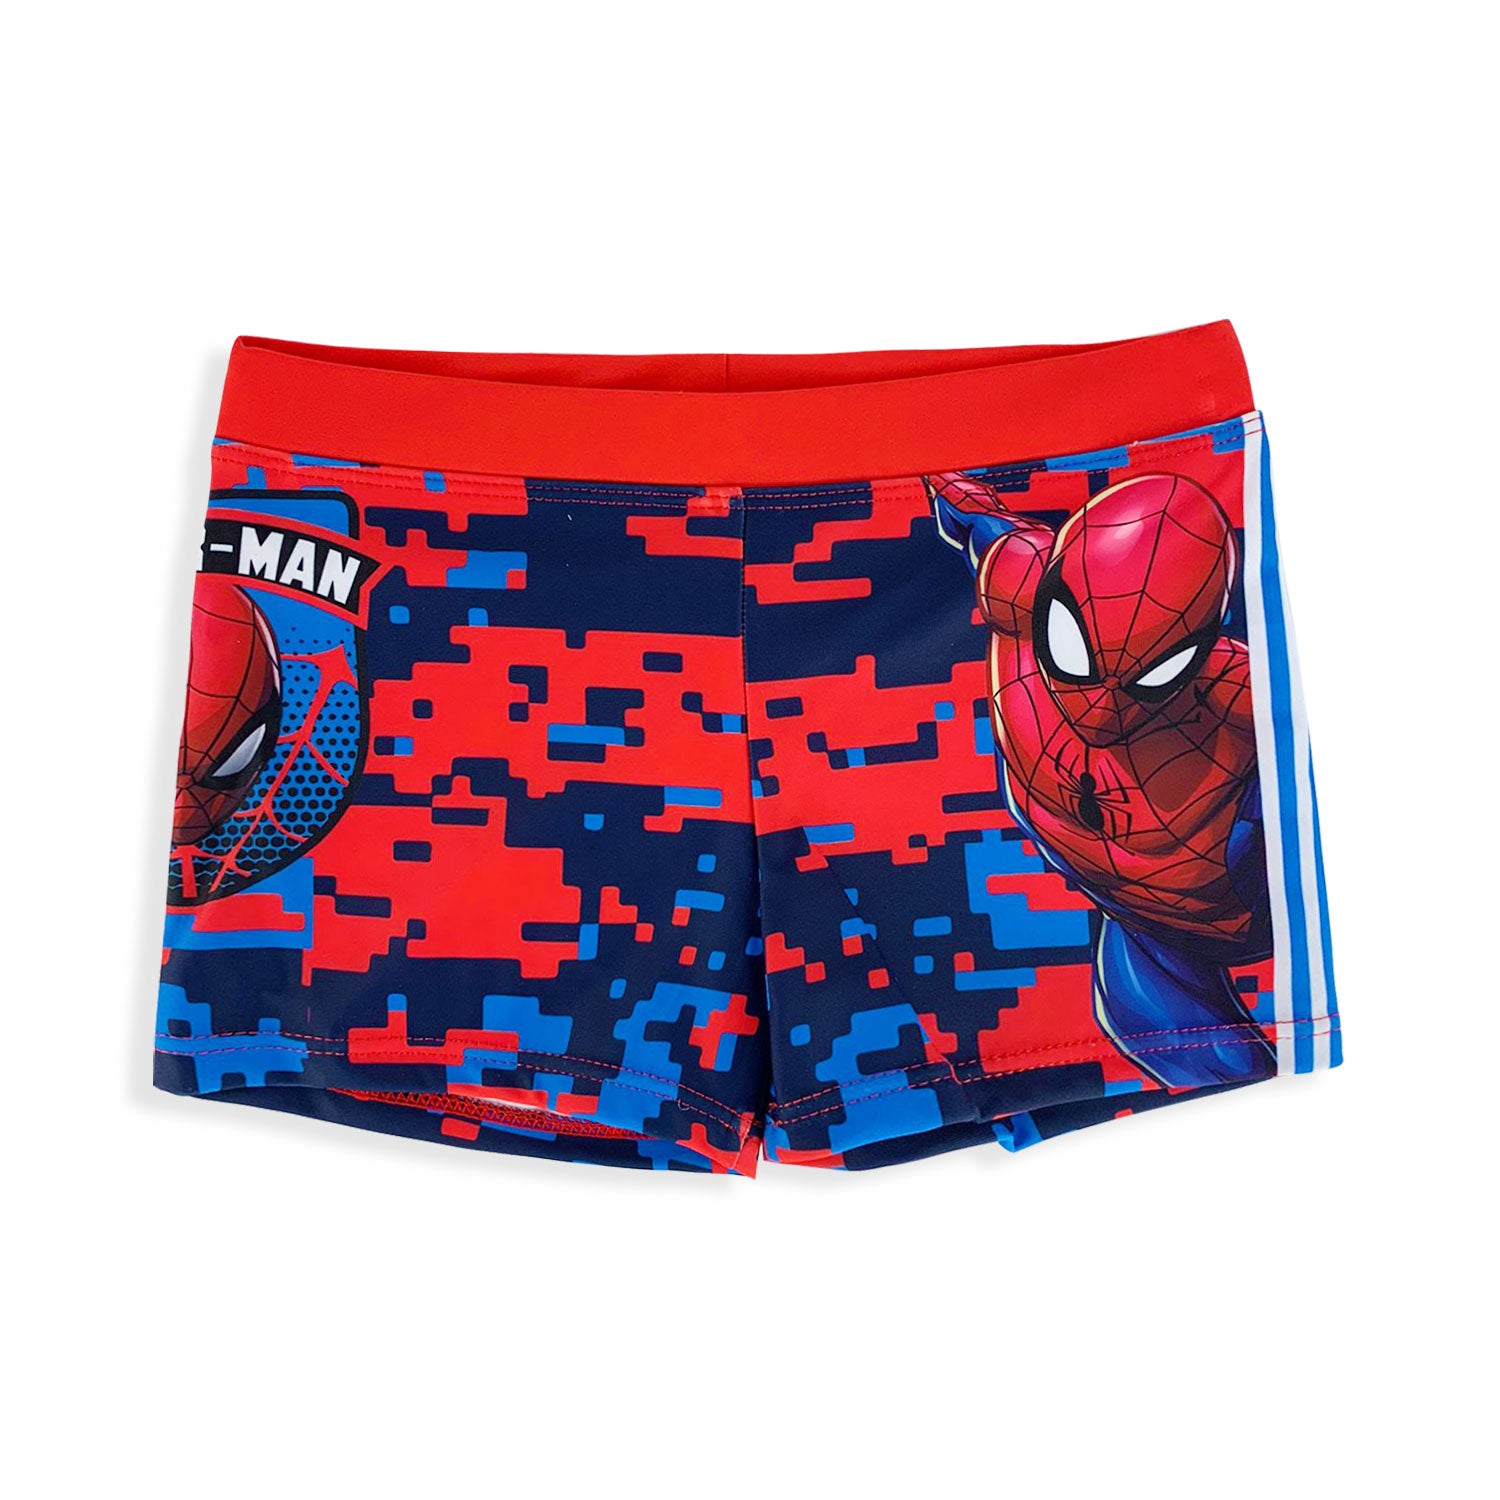 Costume mare Marvel Spiderman ufficiale pantaloncino boxer bimbo piscina 5347